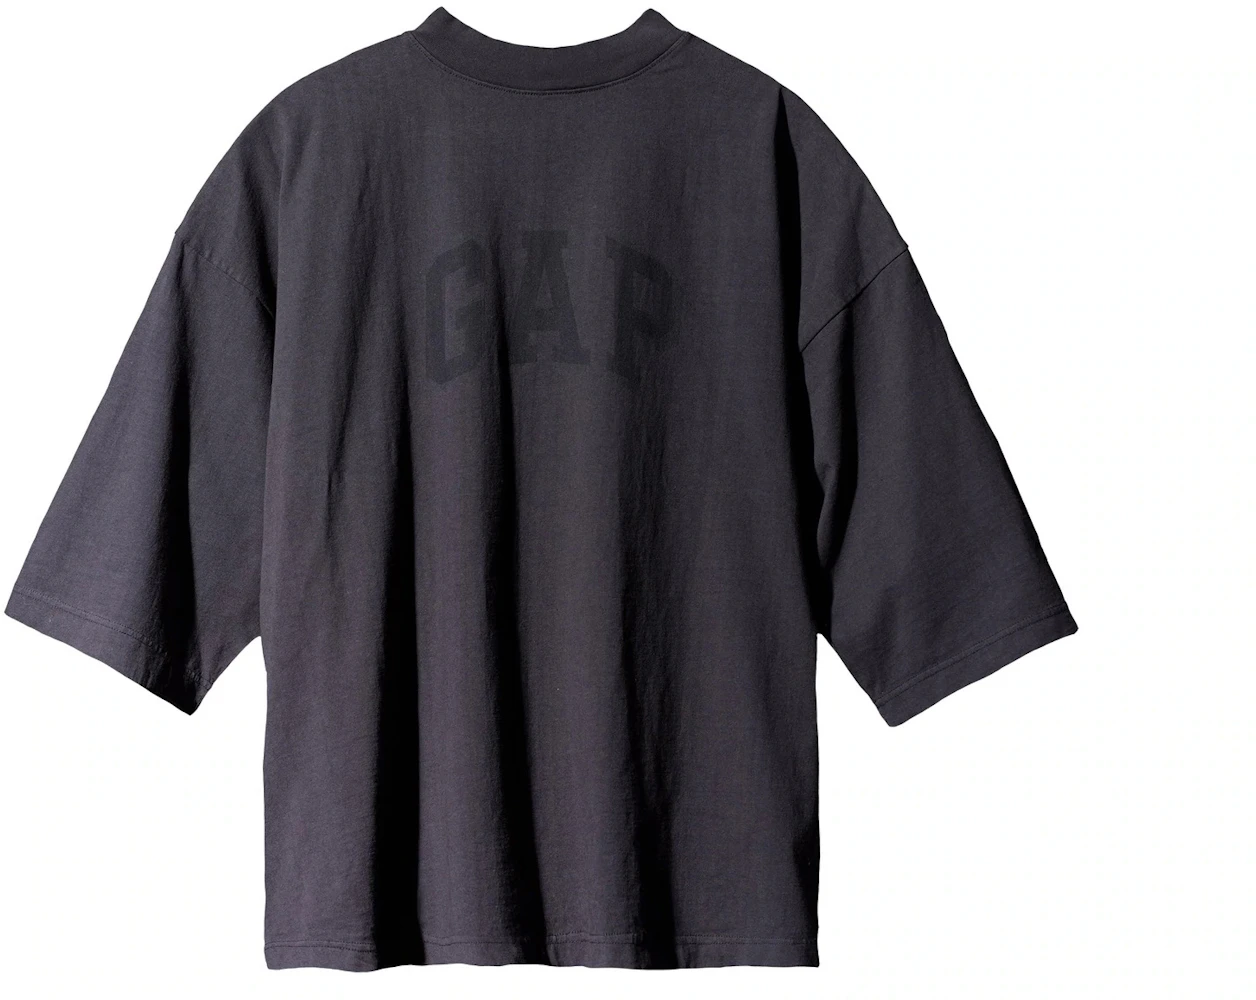 Yeezy Gap Engineered by Balenciaga Dove 3/4 Sleeve Tee Washed Black Men ...